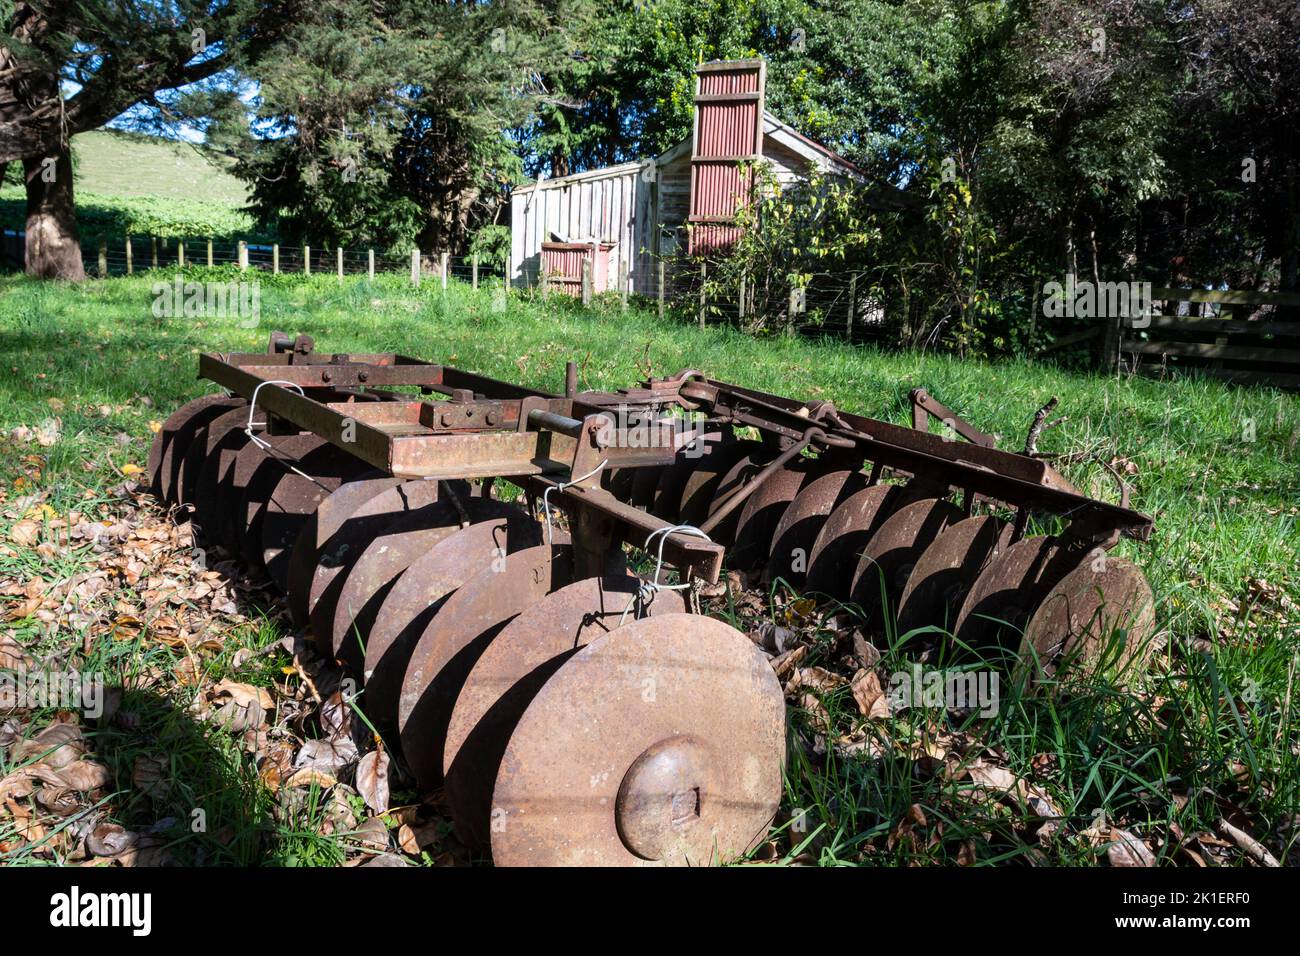 Ancienne machine agricole, une herse à disques, devant le cottage abandonné, Pohangina Valley, Manawatu, Île du Nord, Nouvelle-Zélande Banque D'Images